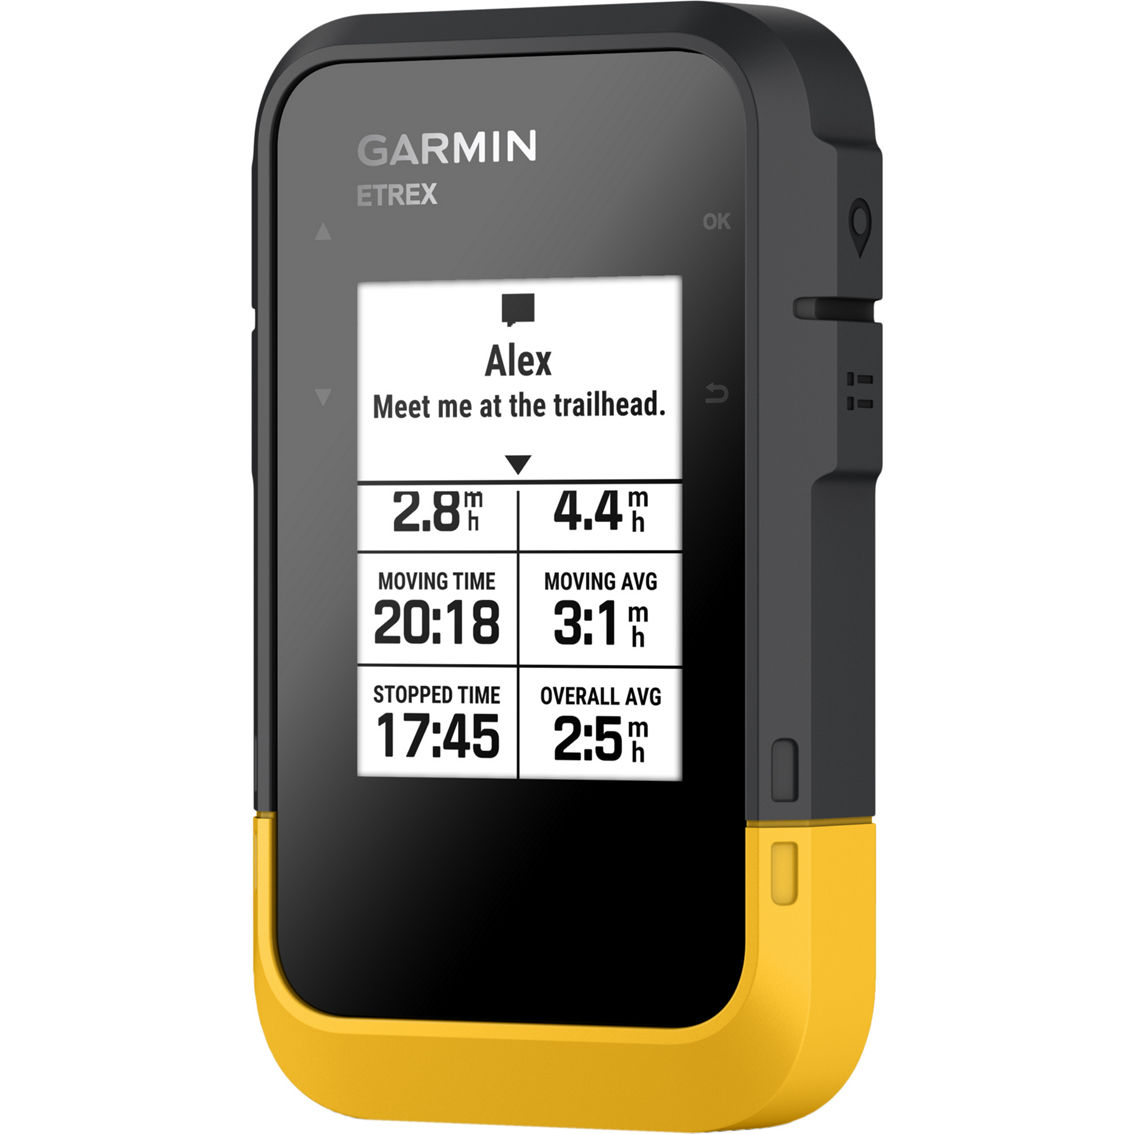 Garmin ETrex SE GPS Handheld Navigator - Image 6 of 8